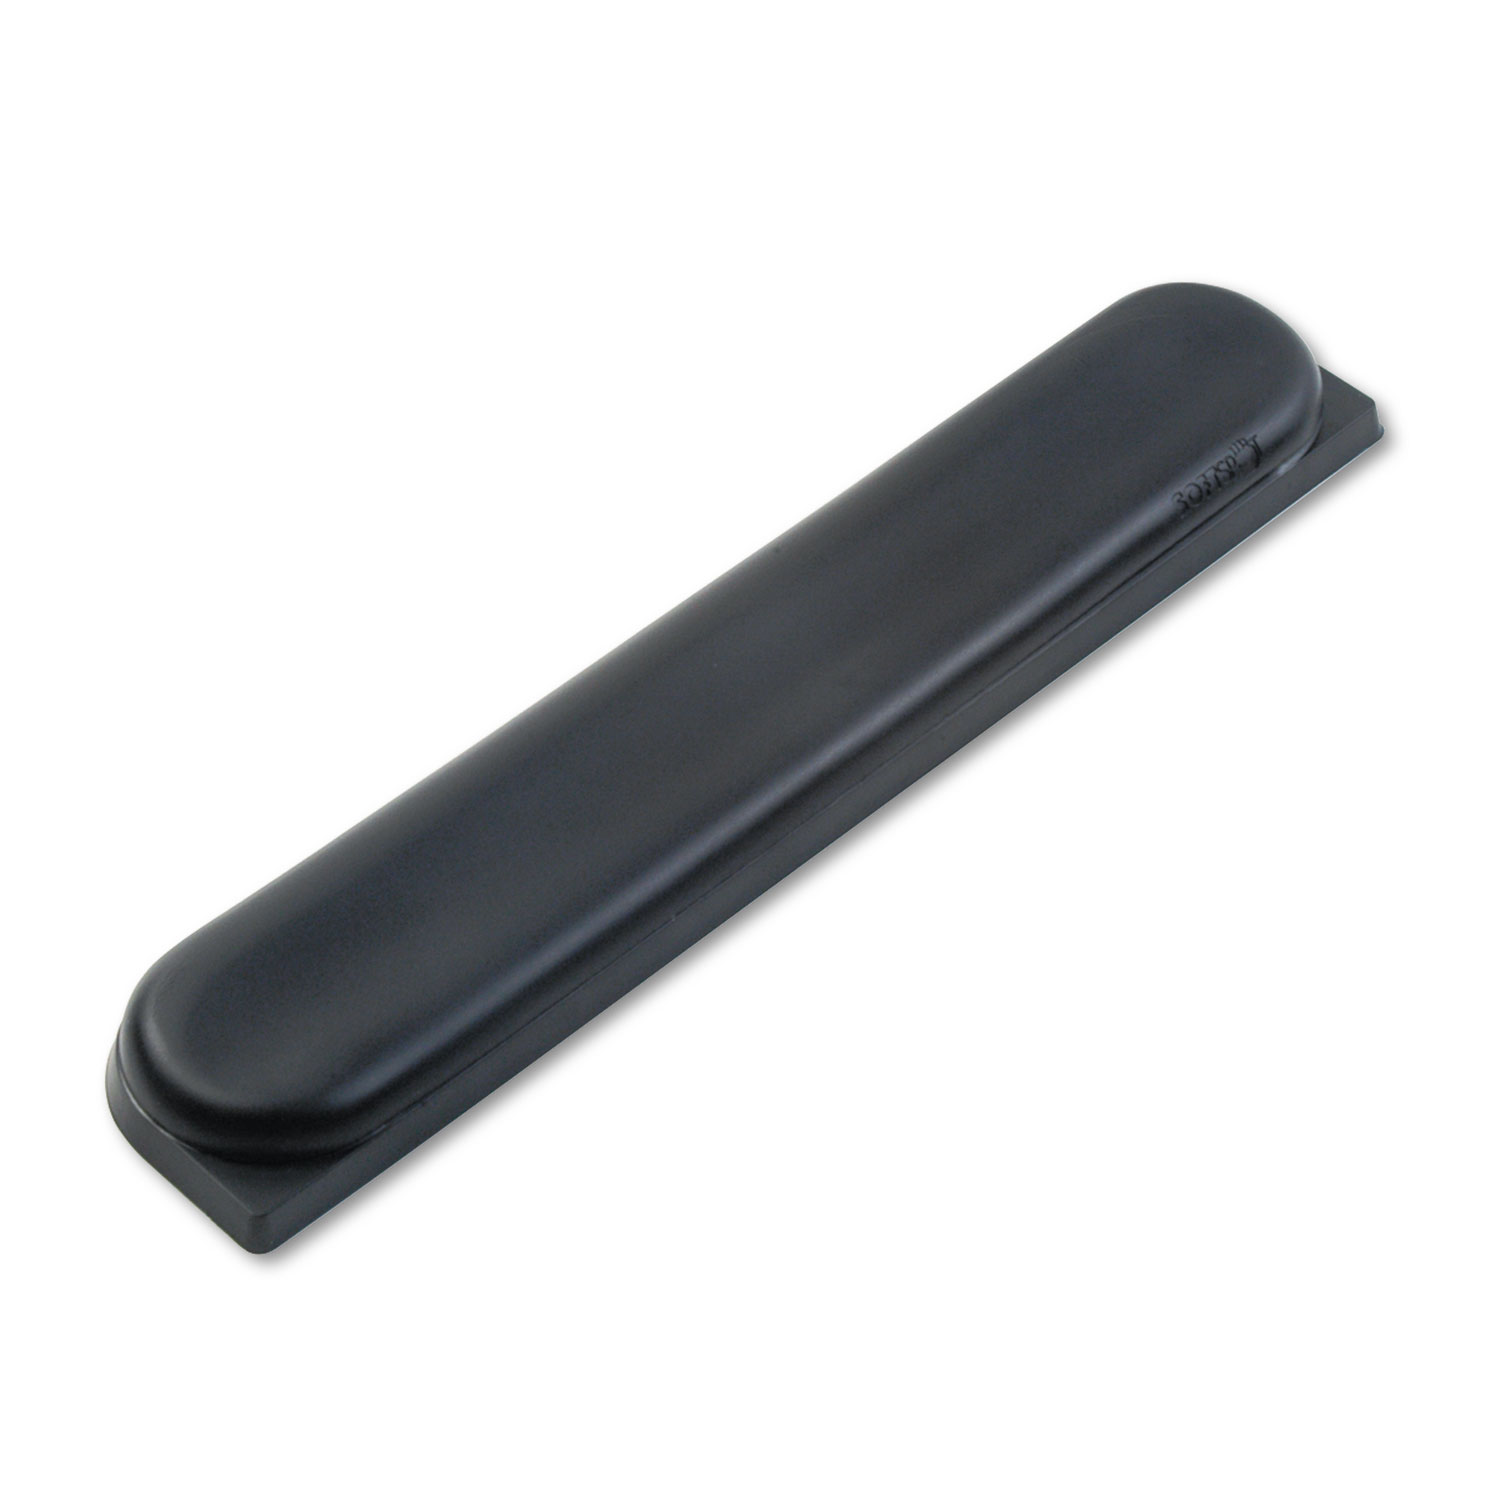 Safco SAF90208 SoftSpot Proline Sculpted Keyboard Wrist Rest, Black